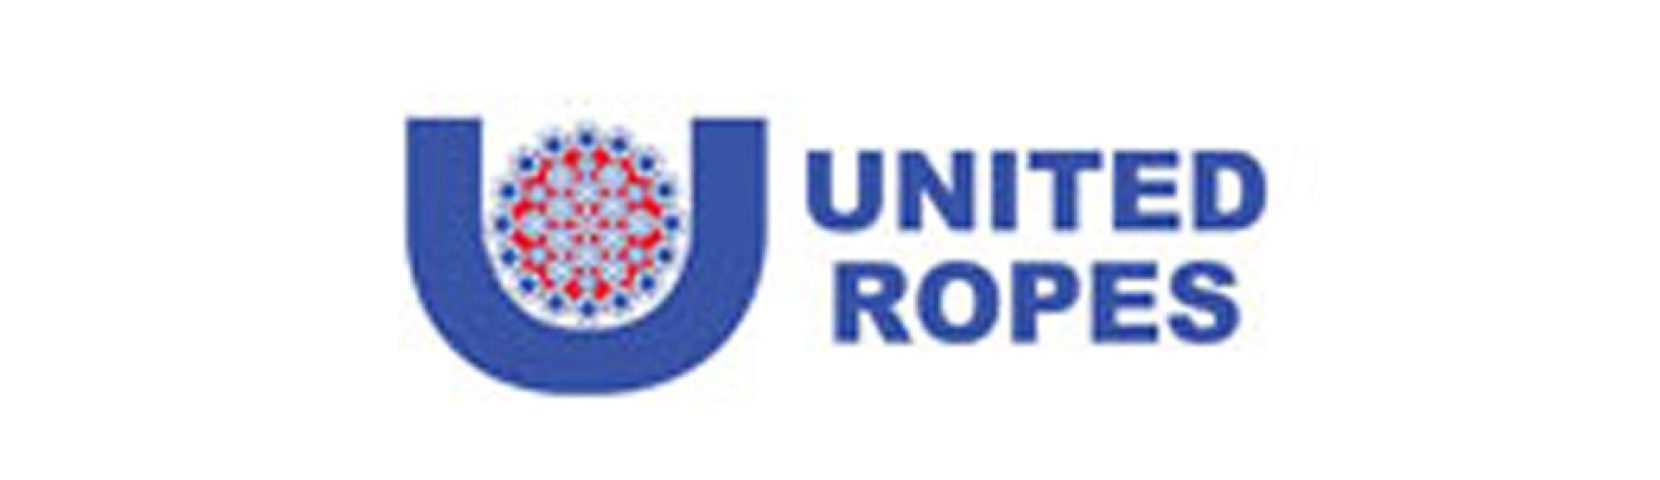 united-ropes_